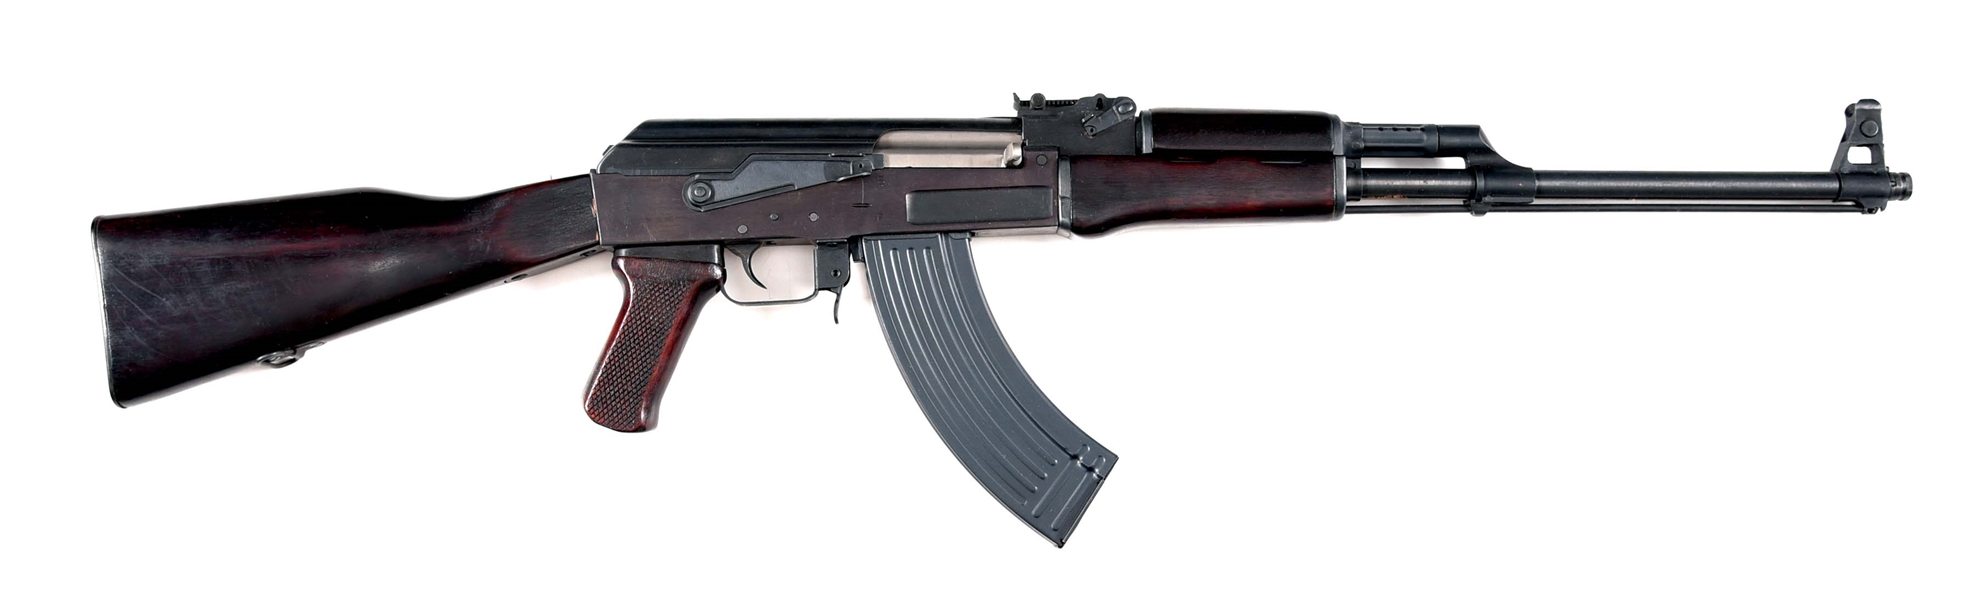 (M) POLYTECH LEGEND SERIES AK-47S NATIONAL MATCH SEMI AUTOMATIC RIFLE.